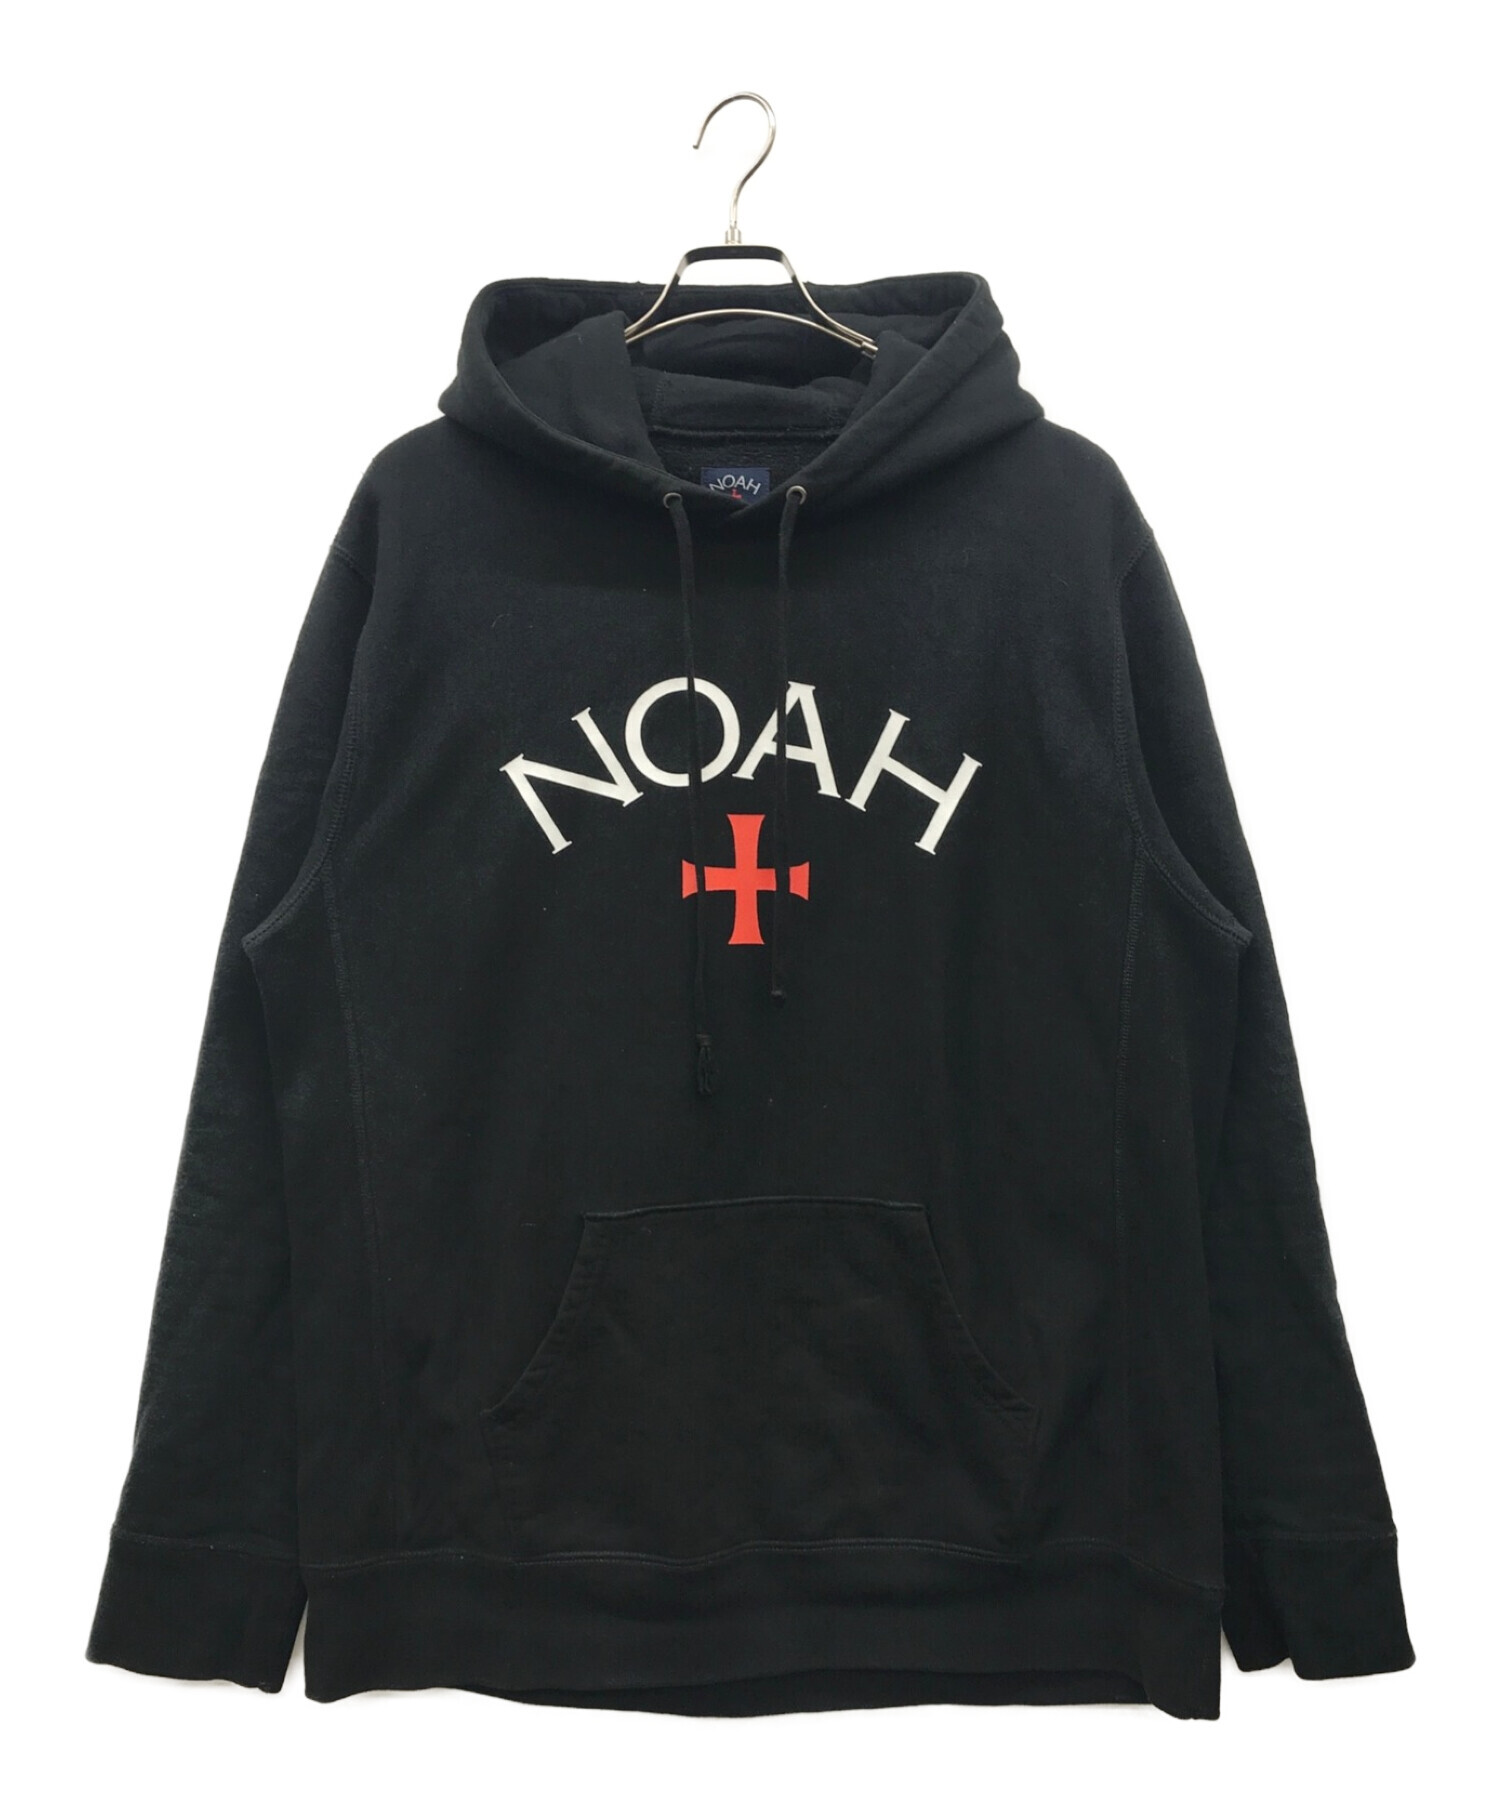 noah パーカー(hoodie)